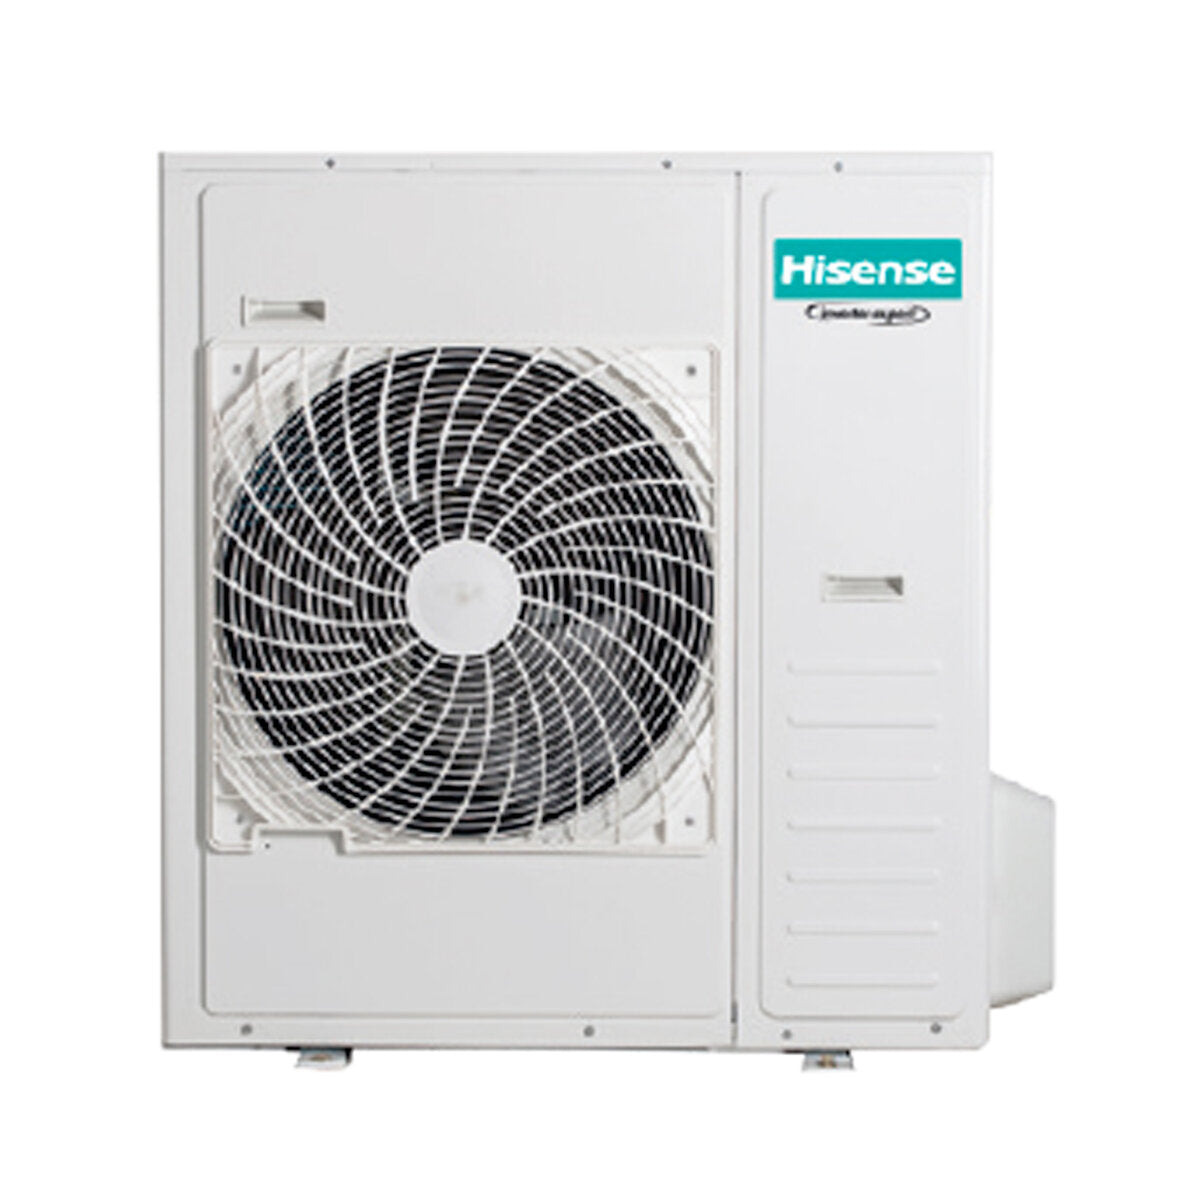 Hisense Hi-Comfort climatiseur split quadri 7000 + 7000 + 9000 + 24000 BTU wifi inverter unité extérieure 12,5 kW